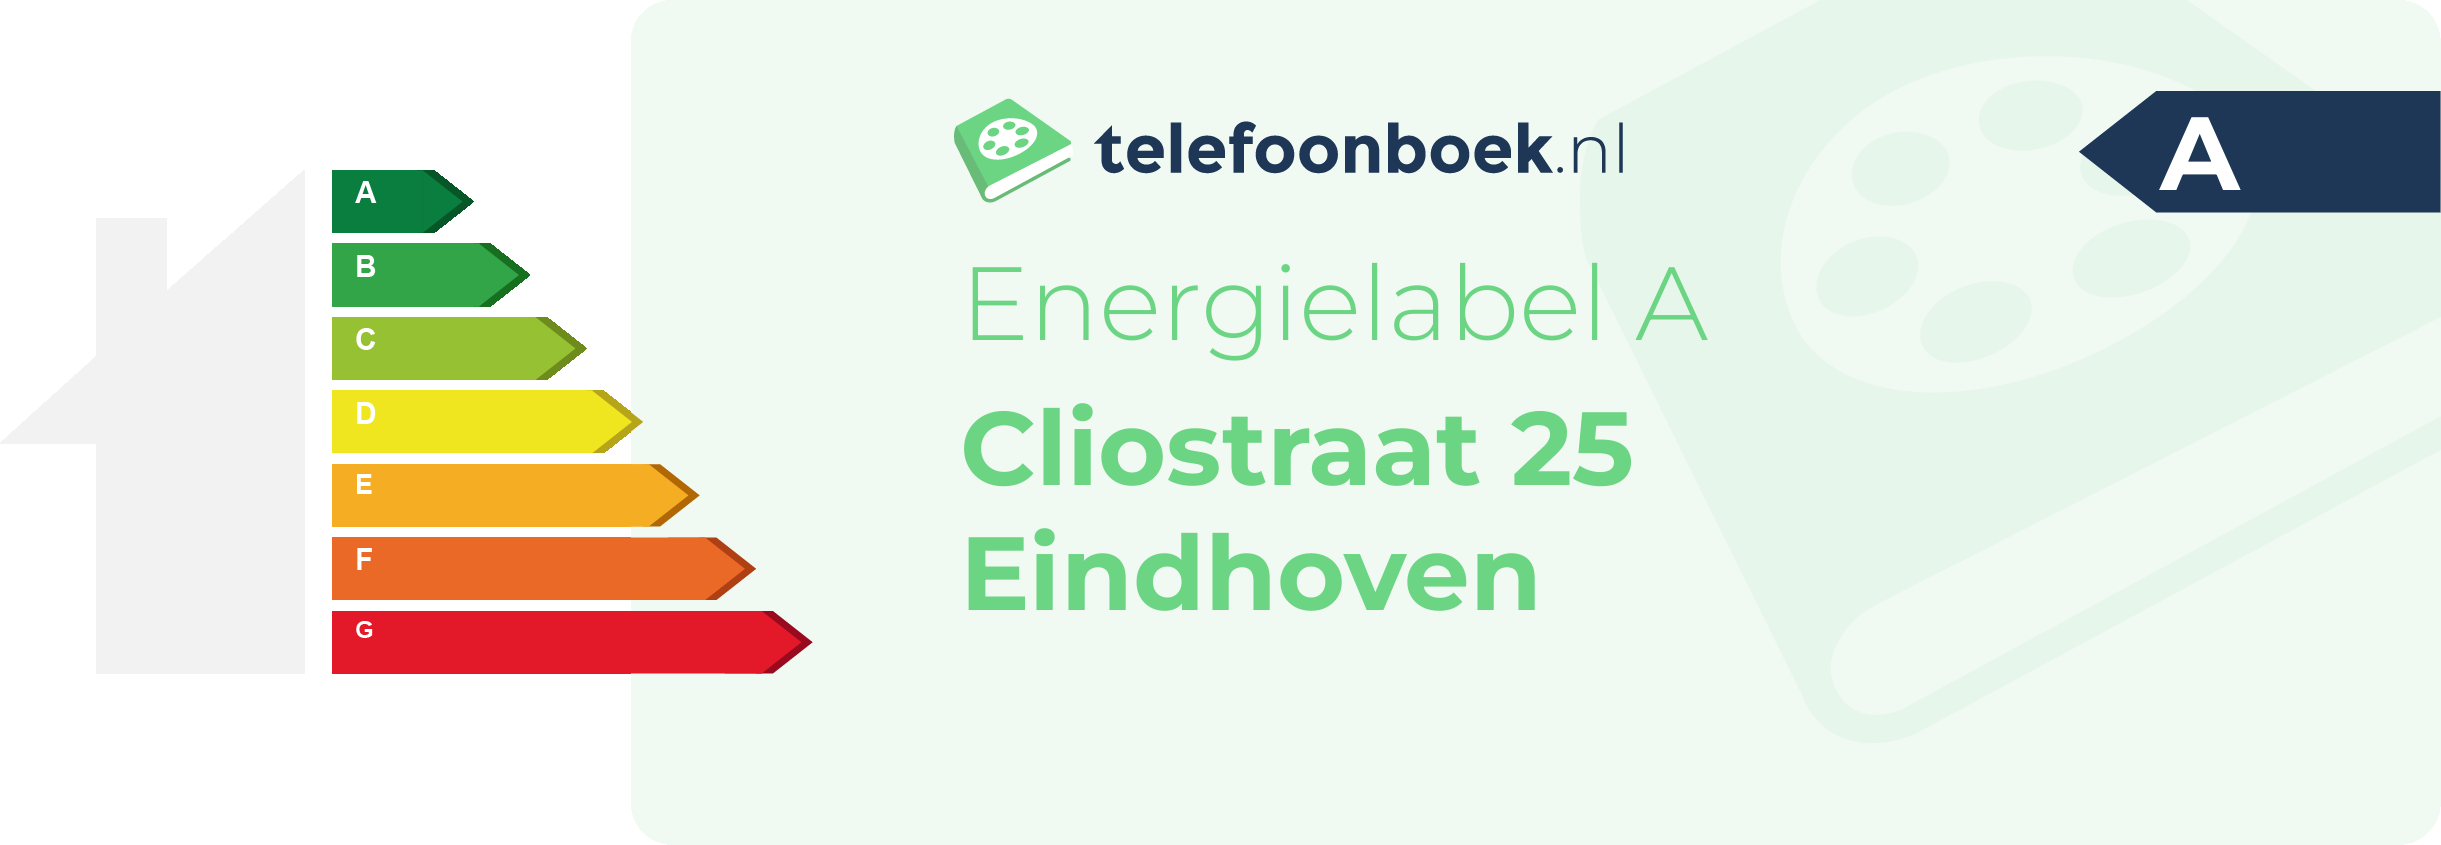 Energielabel Cliostraat 25 Eindhoven